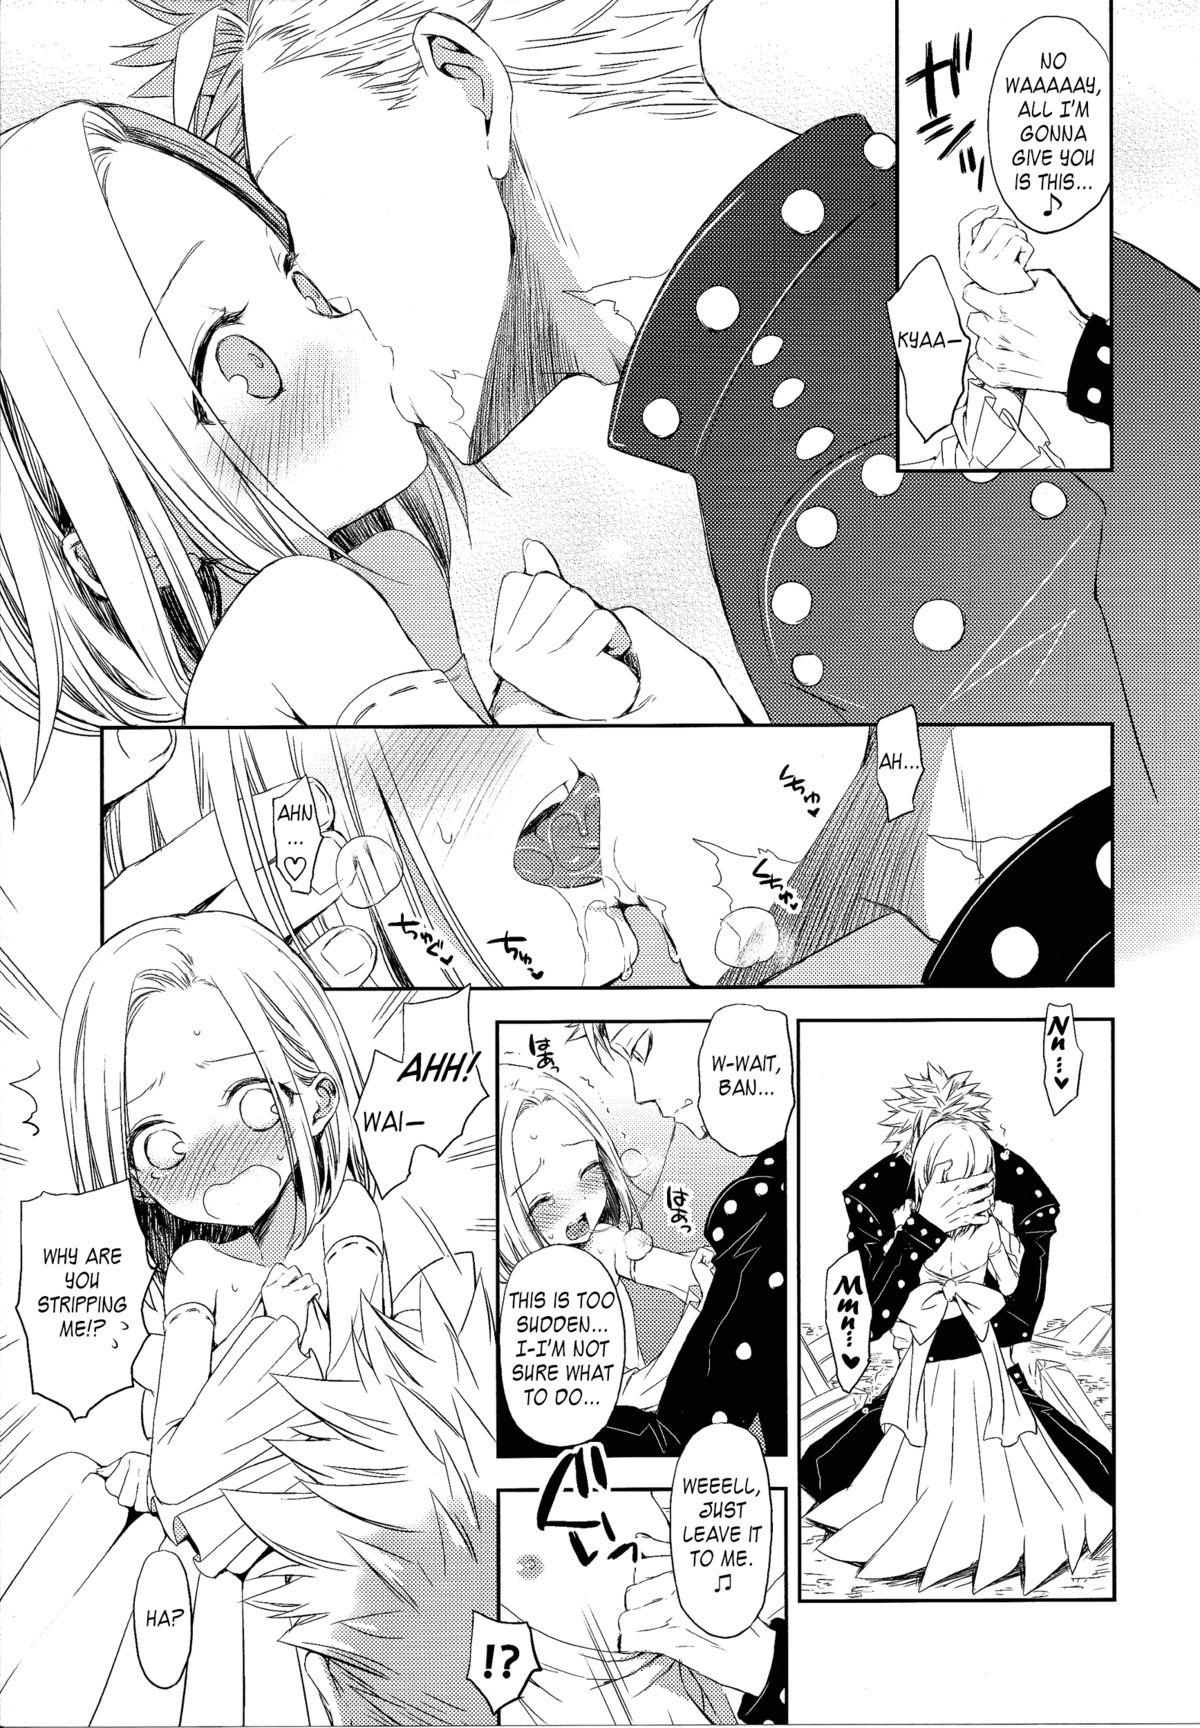 Sluts Kodomo ja Nai wa. | I'm not a child. - Nanatsu no taizai Costume - Page 7